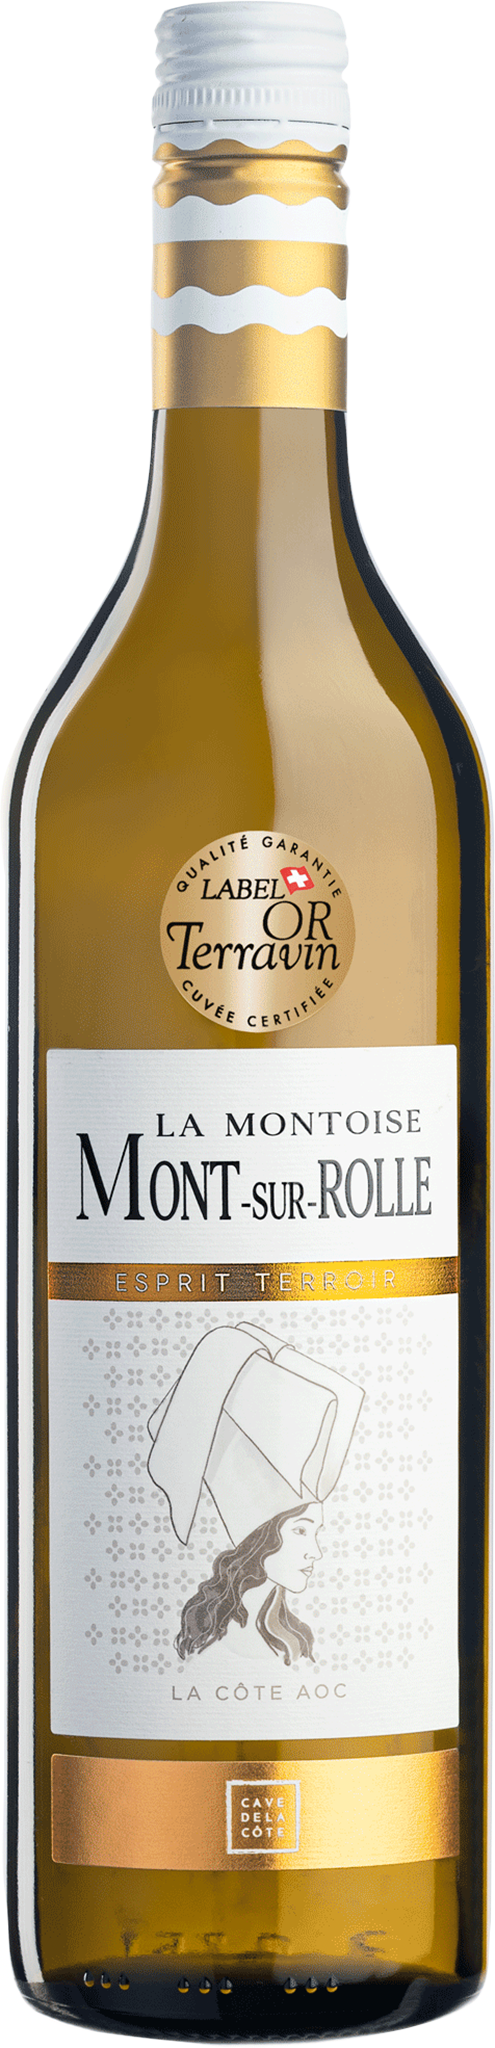 001492.002-75-Esprit Terroir Mont-sur-Rolle La Montoise.png